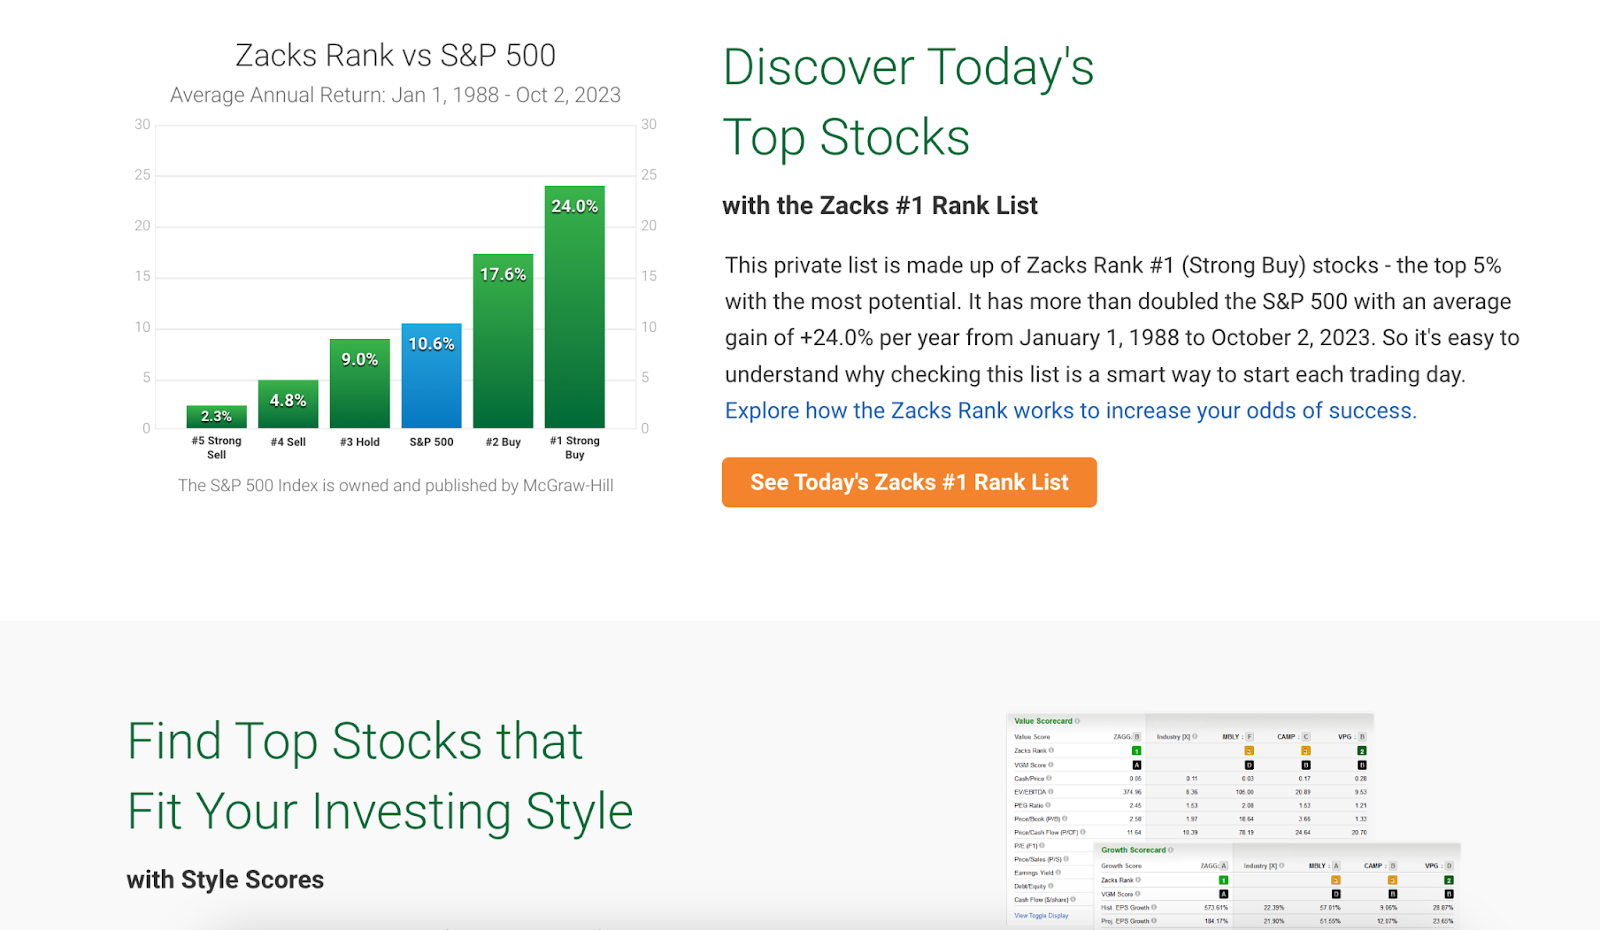 Zacks Research stock picks